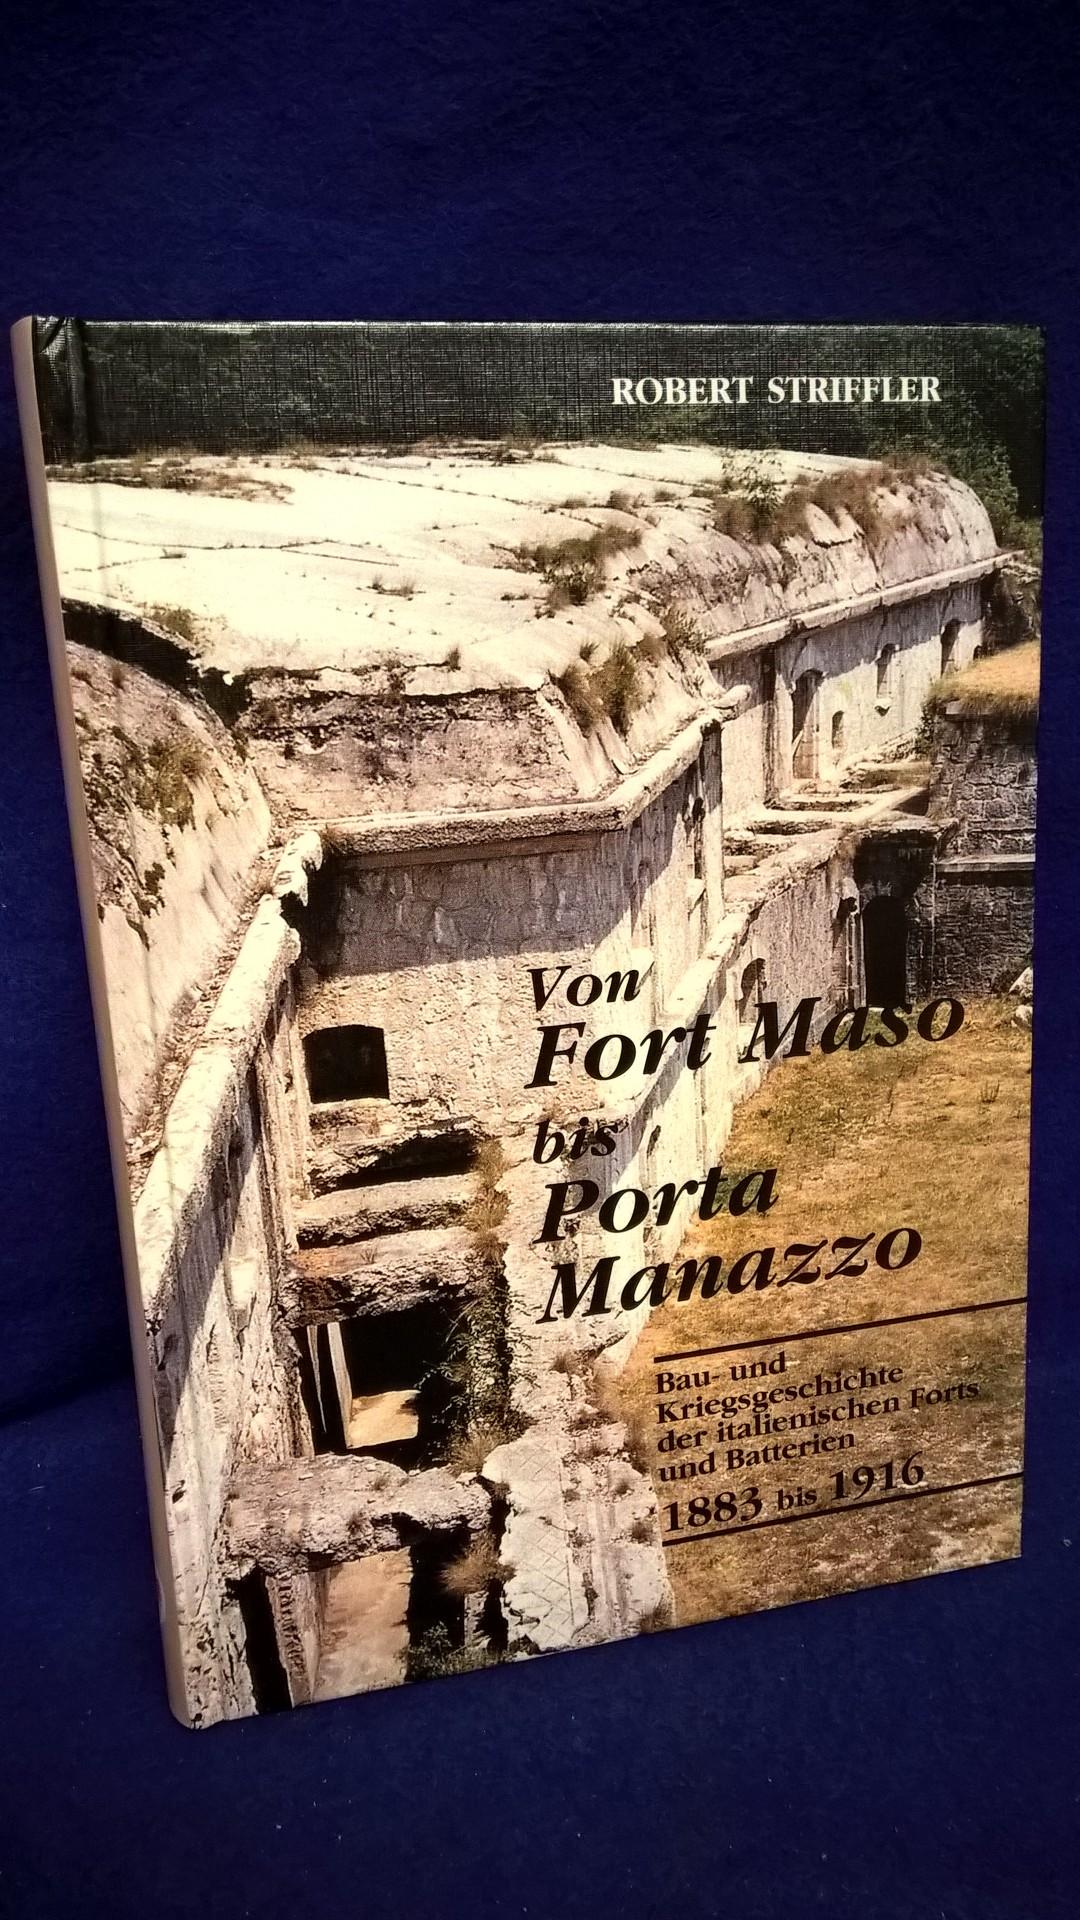 Von Fort Maso bis Porta Manazzo. Bau- und Kriegsgeschichte der italienischen Forts und Batterien 1883-1916.